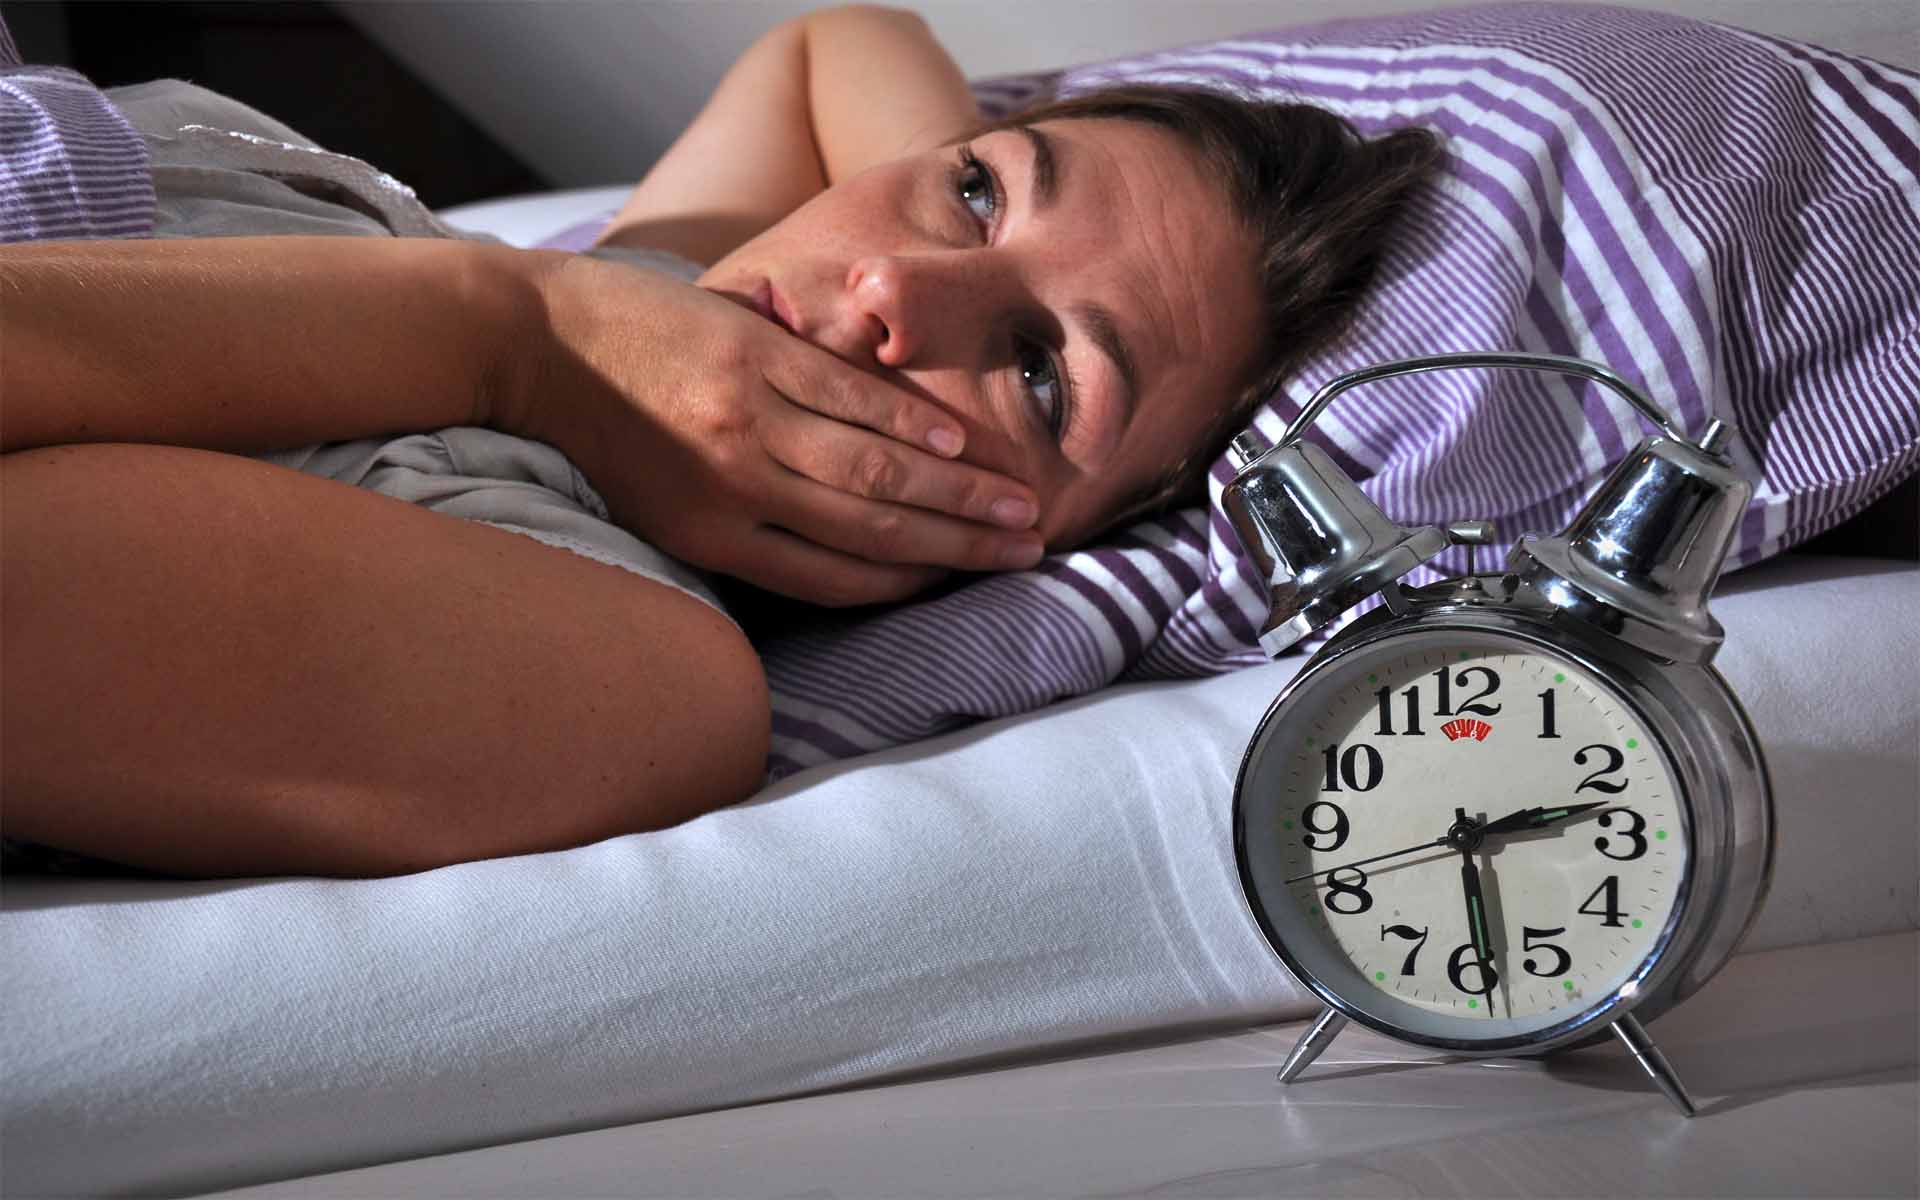 Нарушение сна, плохой сон, проблемы со сном у взрослых - что это, причины, симптомы, лечение